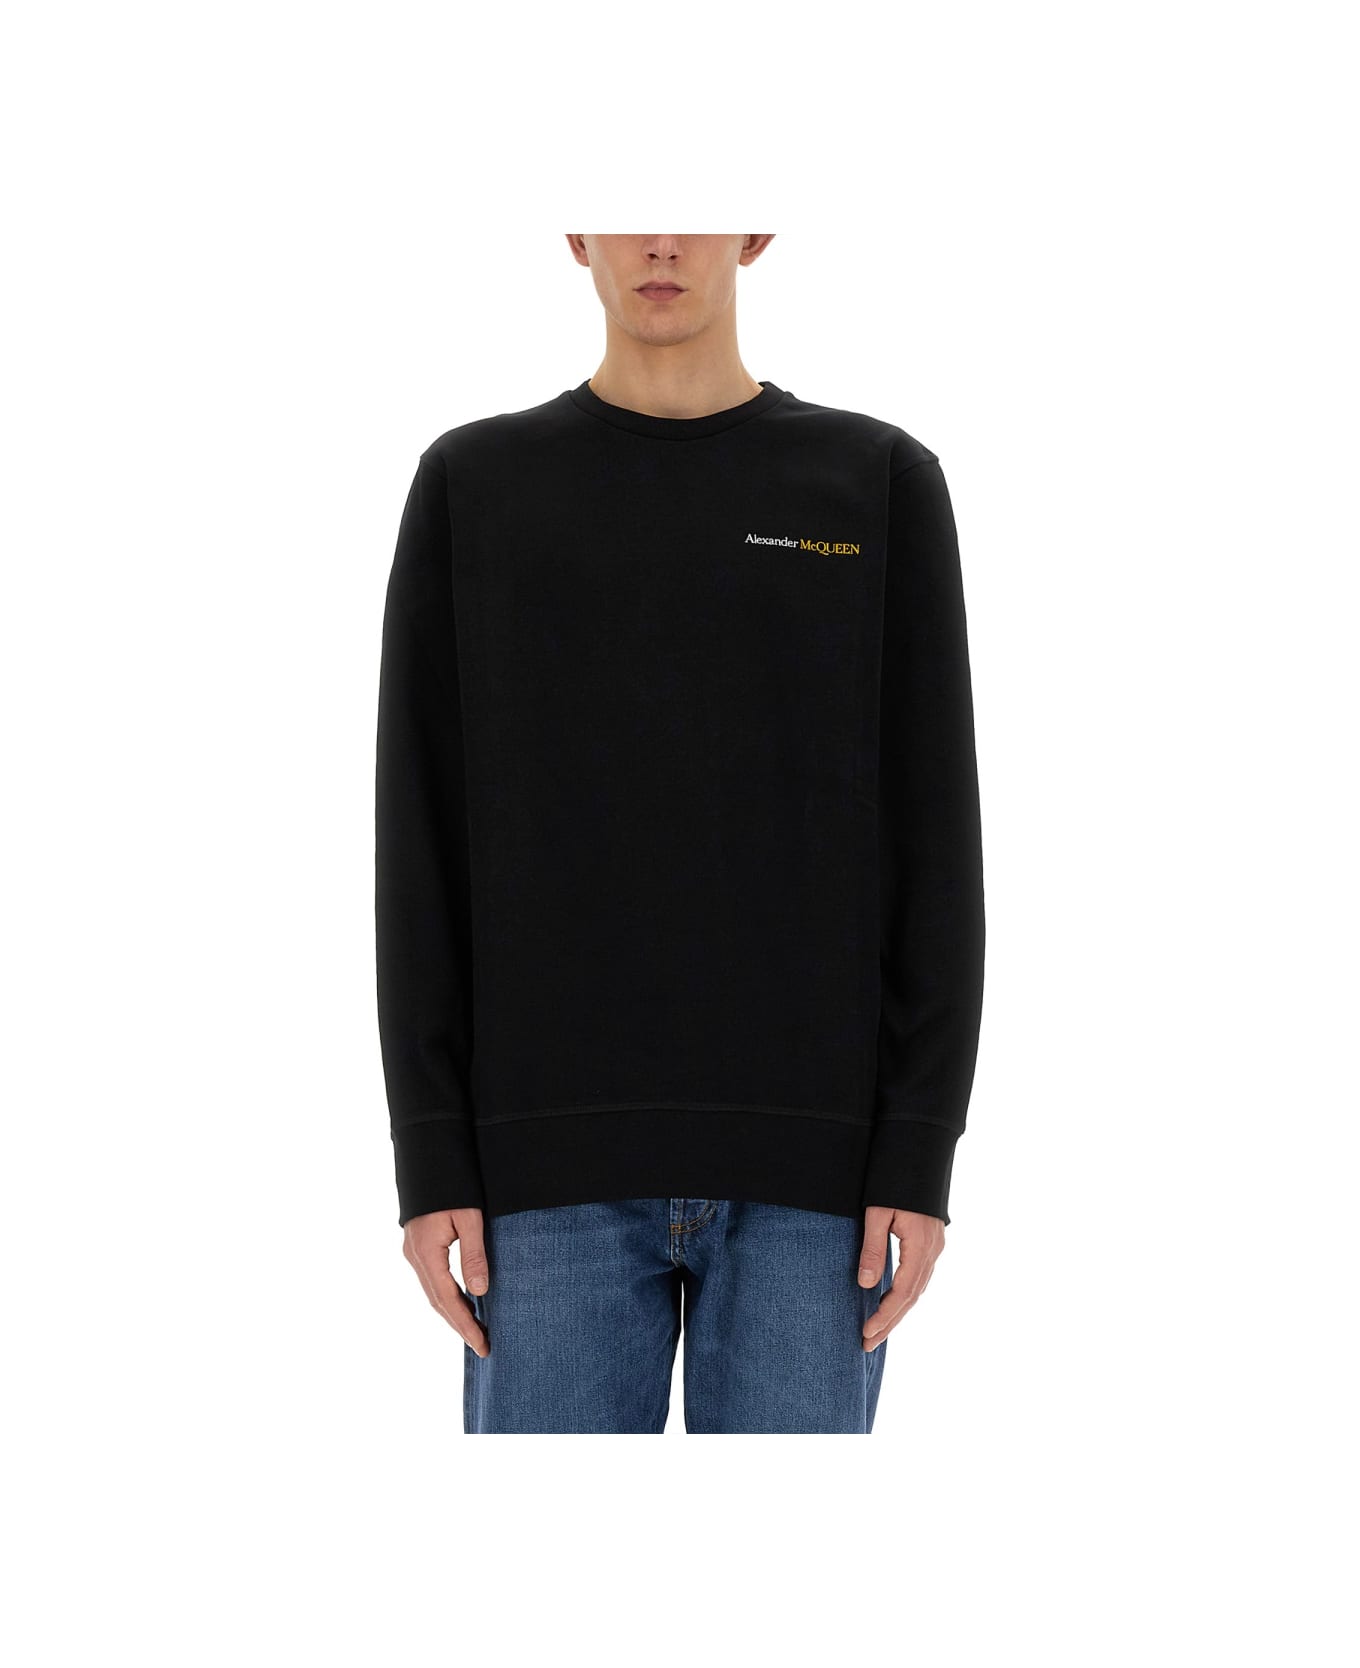 Alexander McQueen Sweatshirt With Logo - BLACK